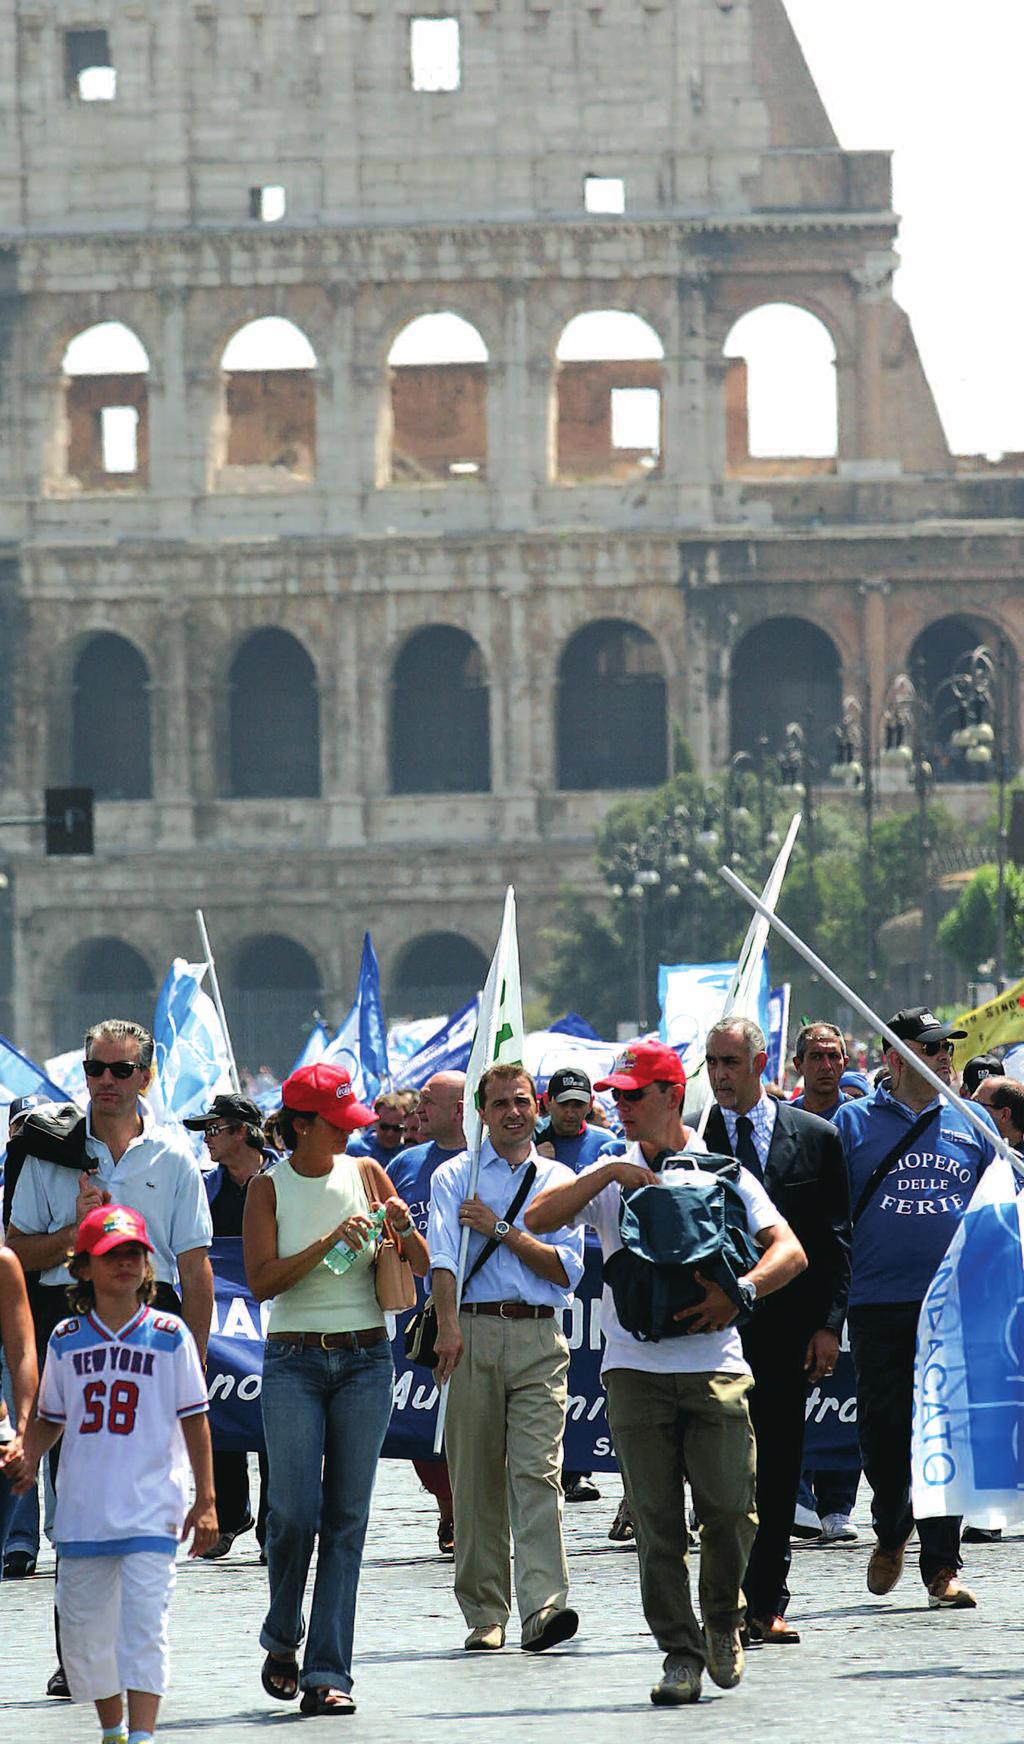 30 31 15 agosto 2005 Migliaia di poliziotti in piazza per il Riordino Roma, 15 agosto 2005 - È stata una vera e propria manifestazione di dissenso quella che a Ferragosto SAP, e SAPAF sono riusciti a